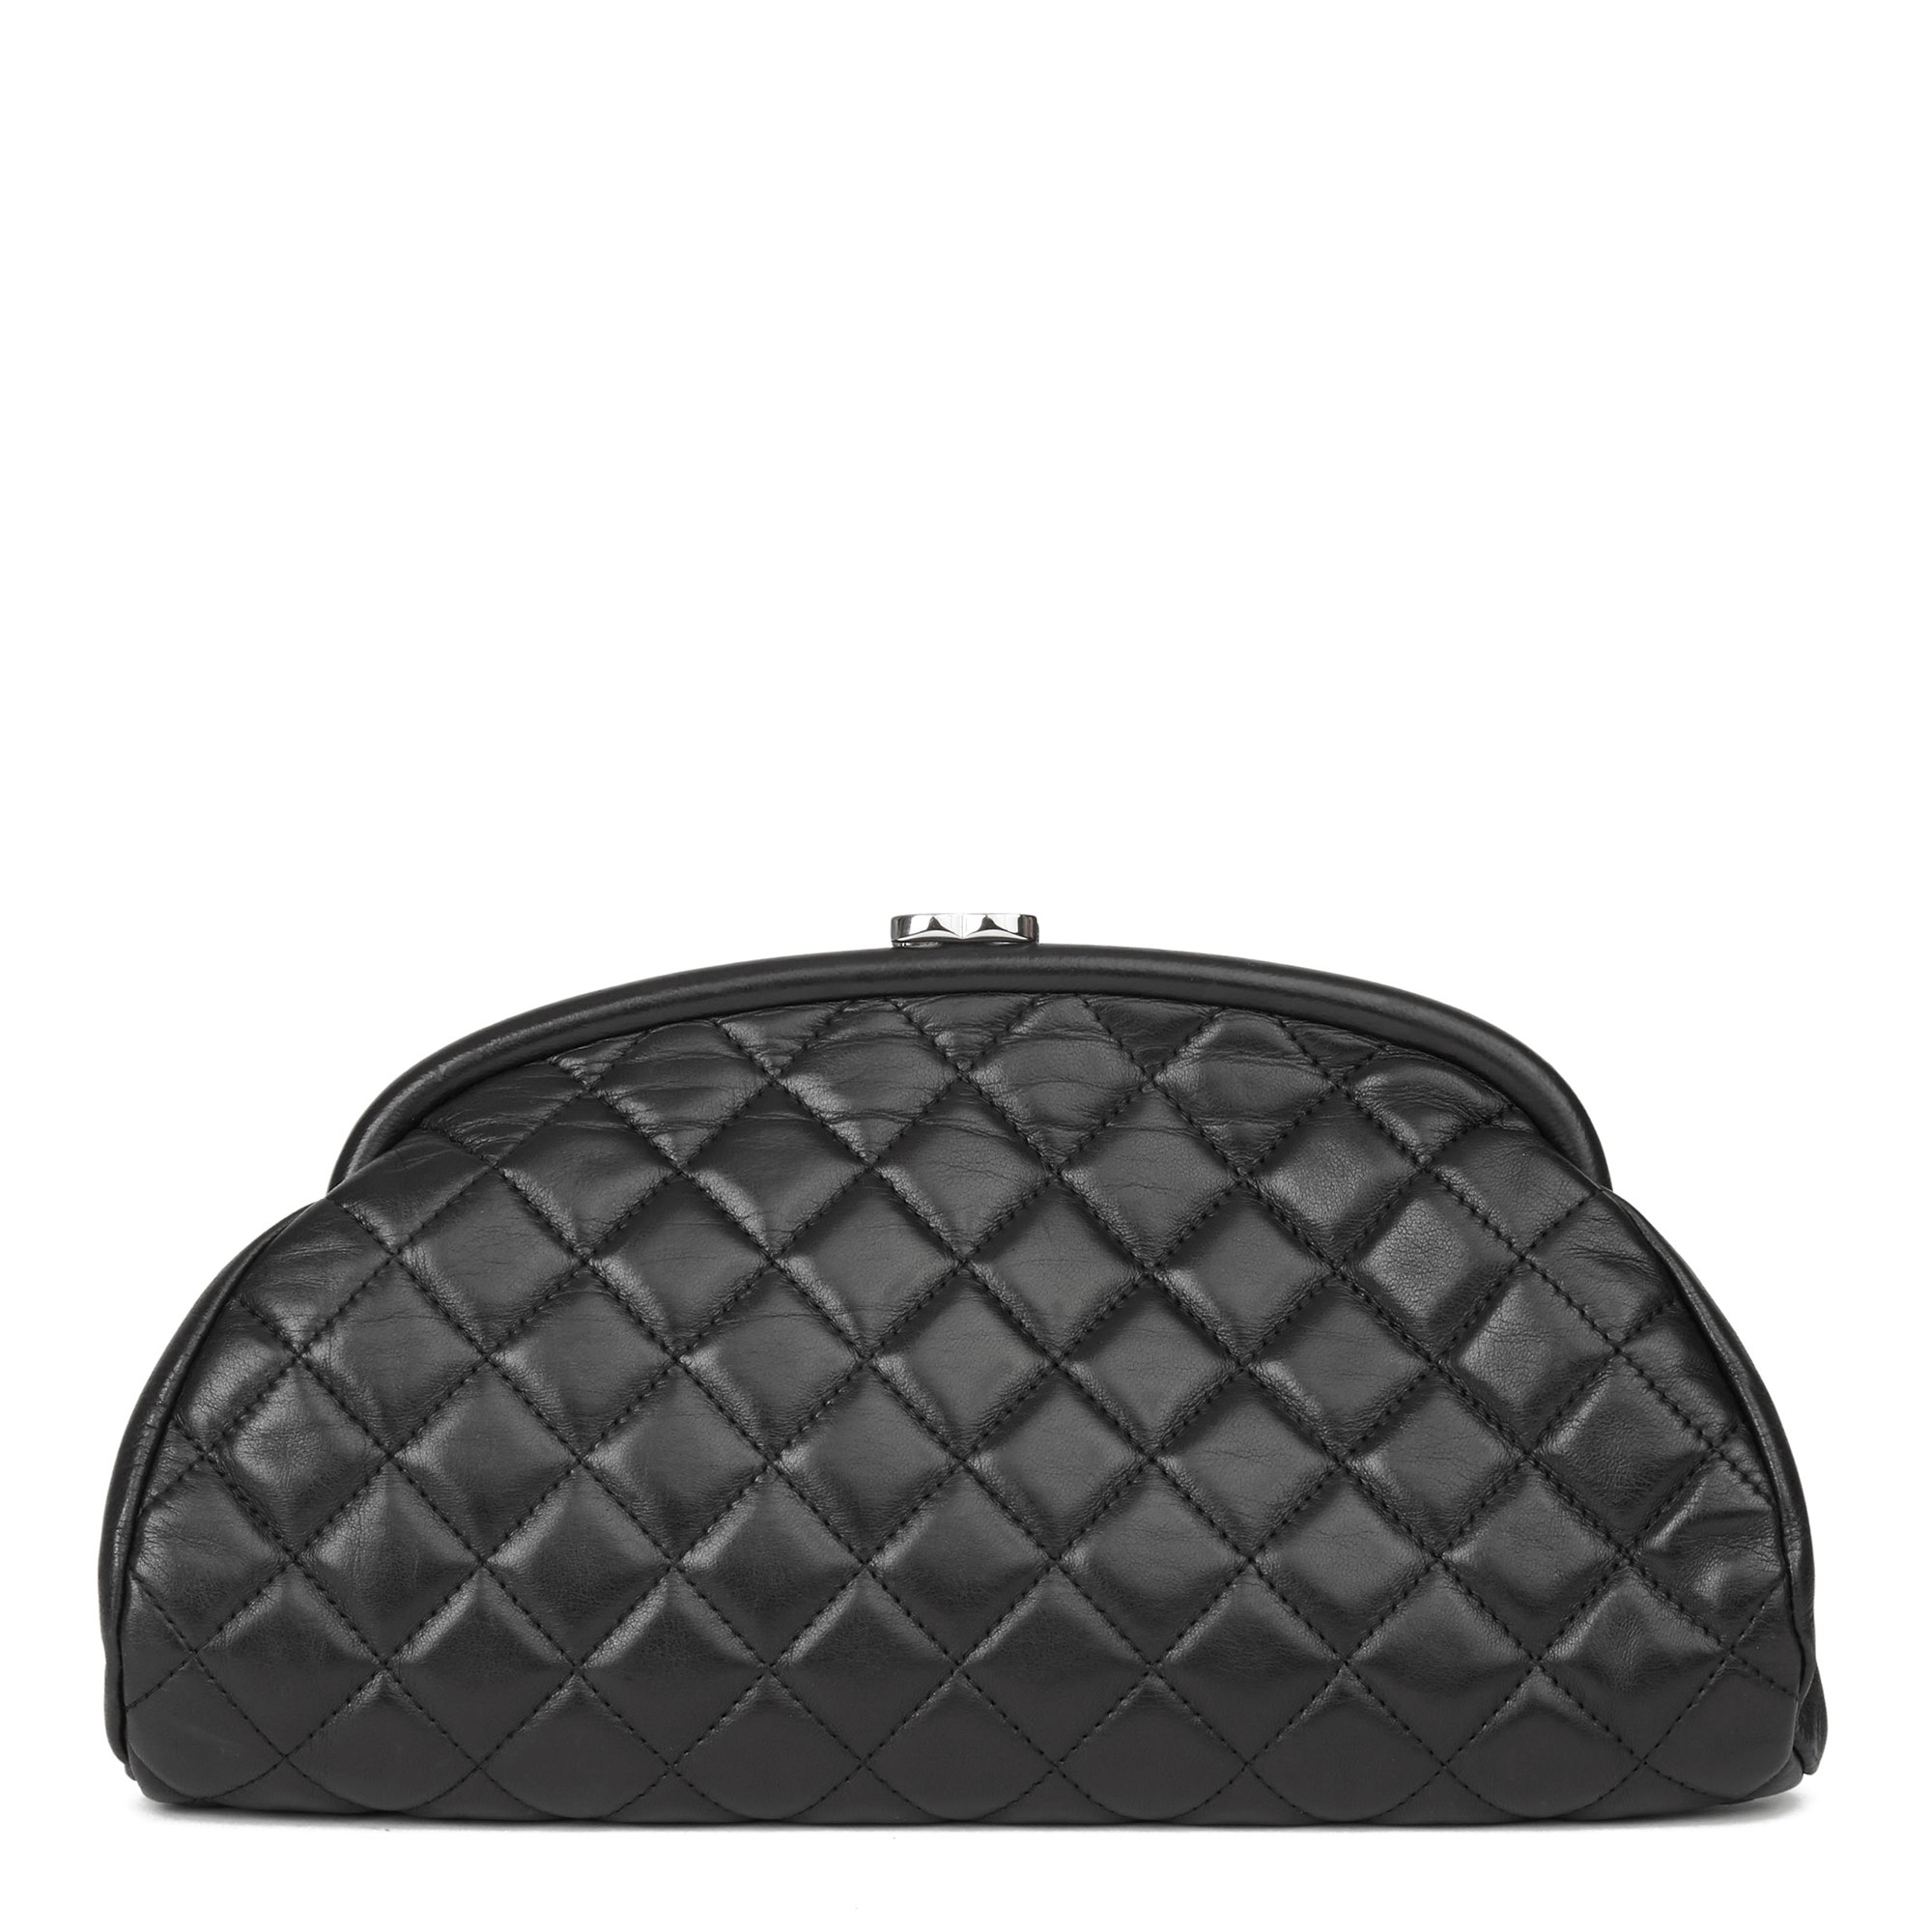 Chanel Clutch Handbag | IQS Executive